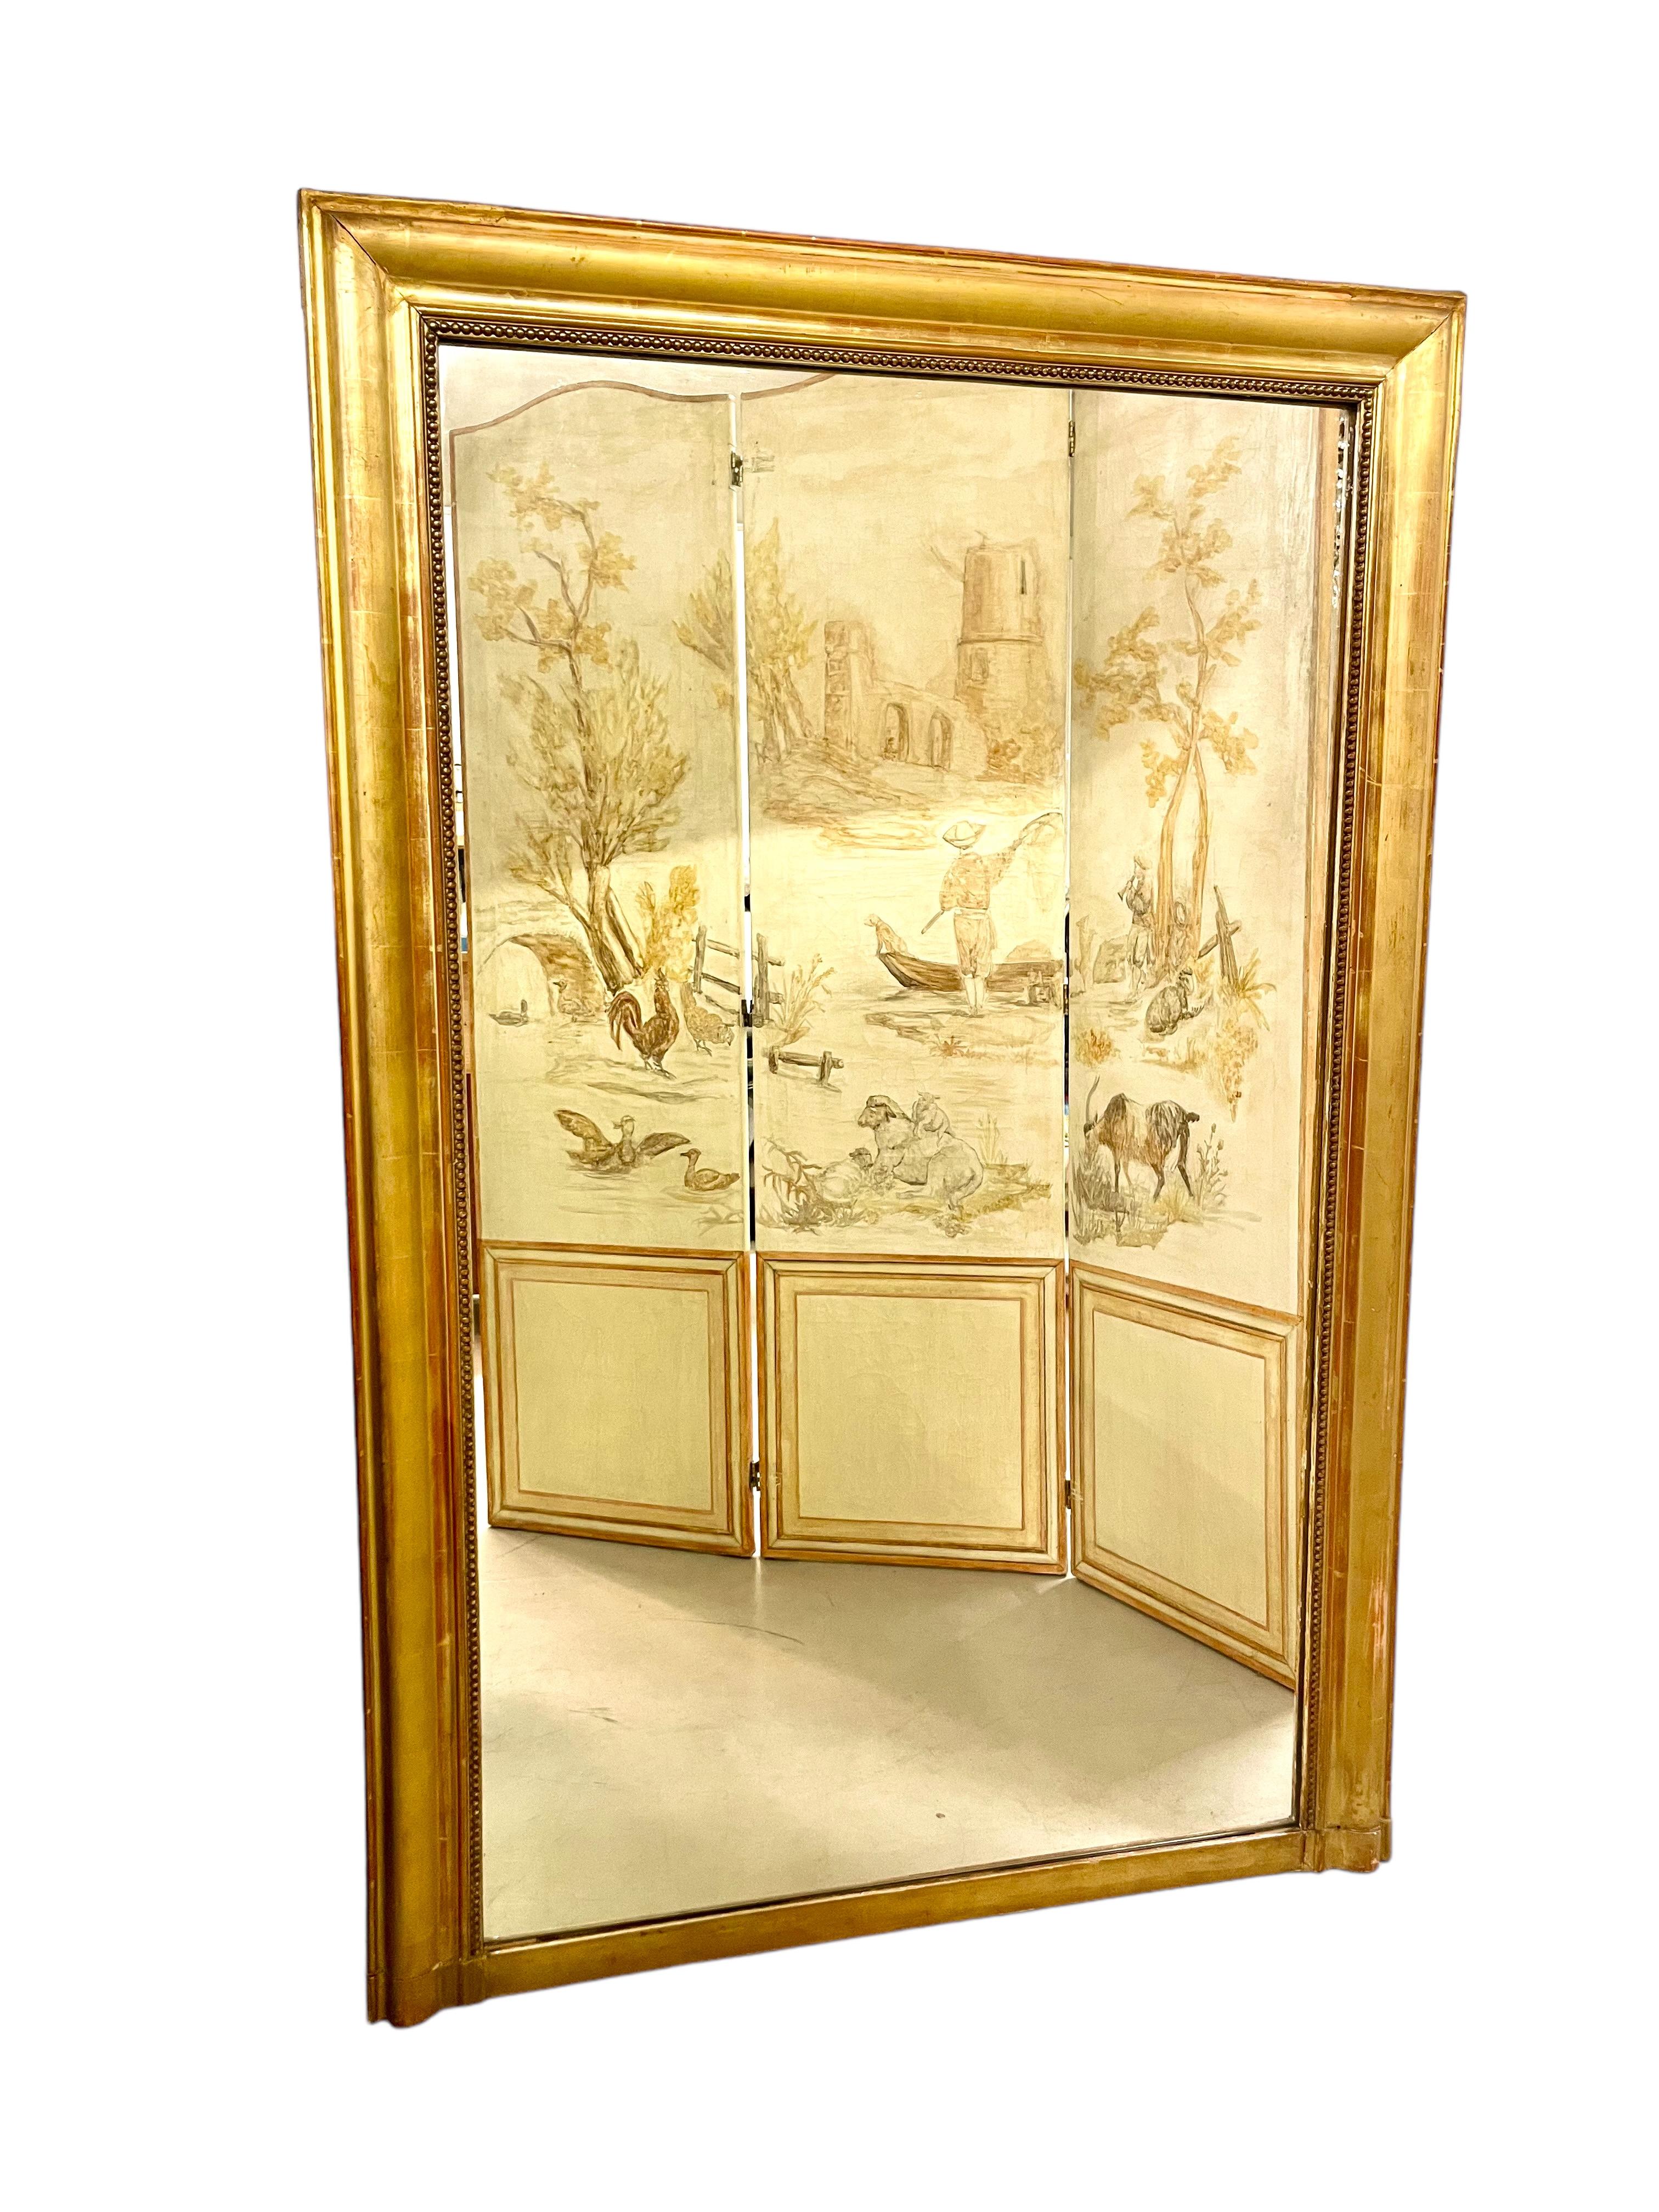 Ein imposanter französischer Trumeau-Spiegel aus dem 19. Jahrhundert aus Holz und vergoldetem Stuck, der im neoklassischen Stil gefertigt ist. Dieser schlichte, aber elegante Spiegel wird von einem geriffelten Rahmen aus vergoldetem Holz